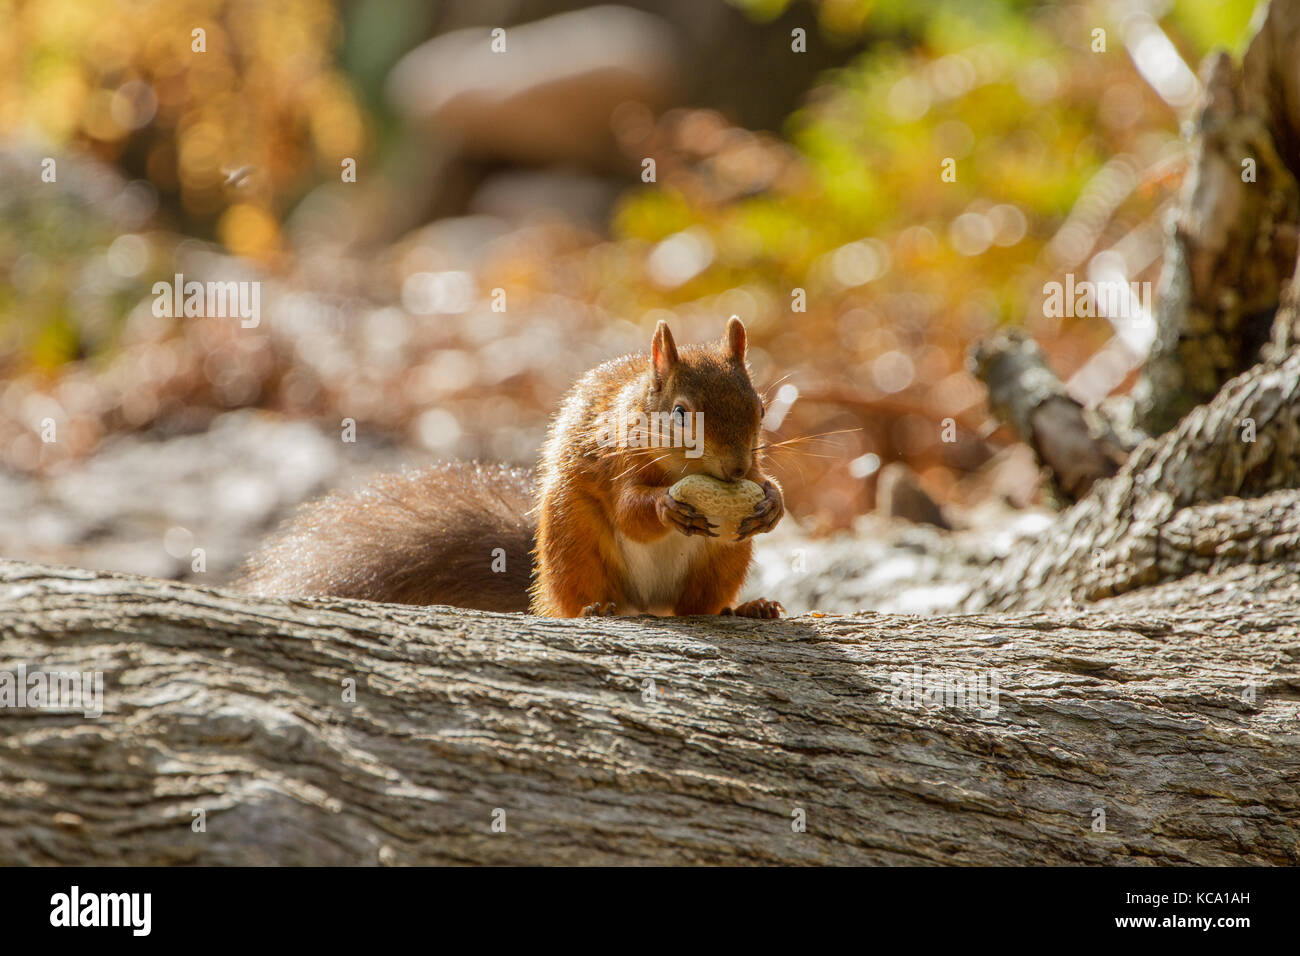 Europäisches Eichhörnchen (sciurus vulgaris) In schönen, natürlichen Umgebung, Insel Brownsea, Poole, Großbritannien Stockfoto